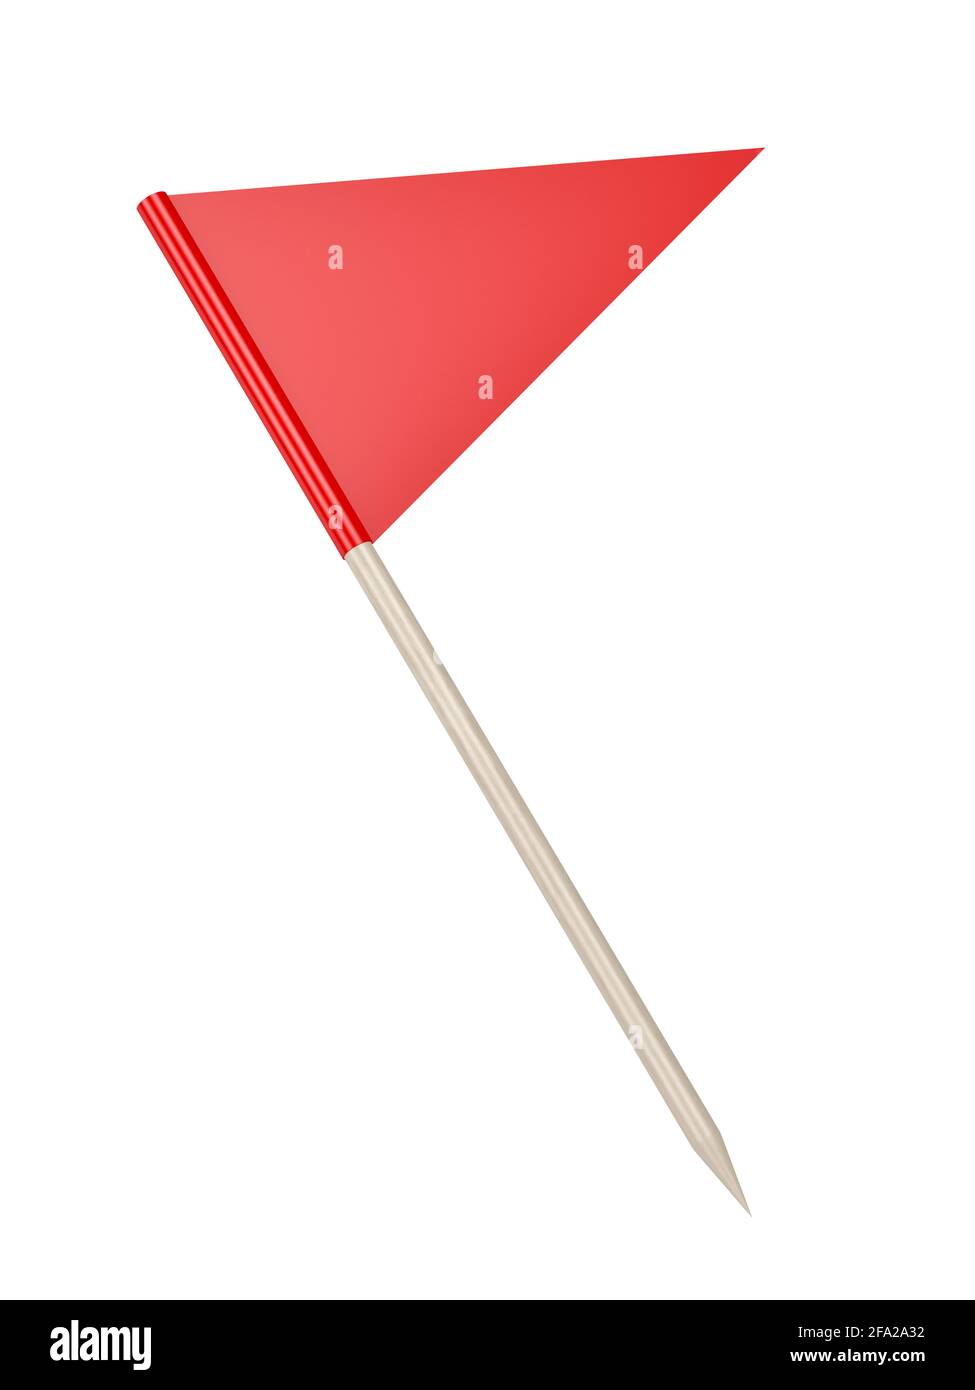 Drapeau de cure-dent triangle rouge, isolé sur fond blanc Banque D'Images